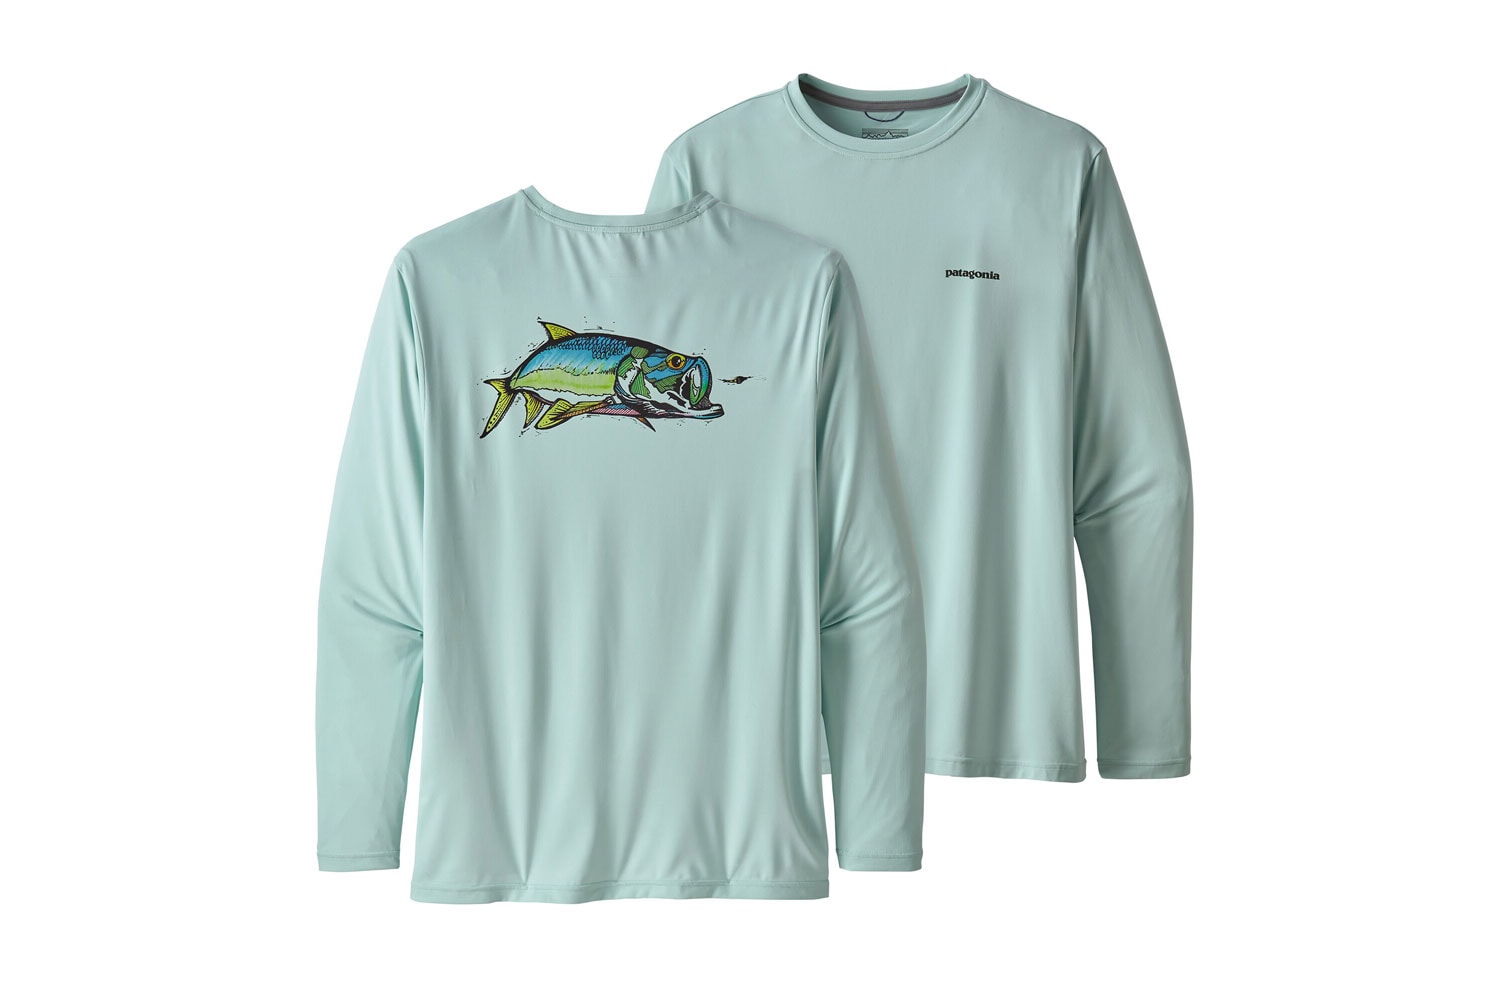 Patagonia Men's Long-Sleeve Fishing Shirts